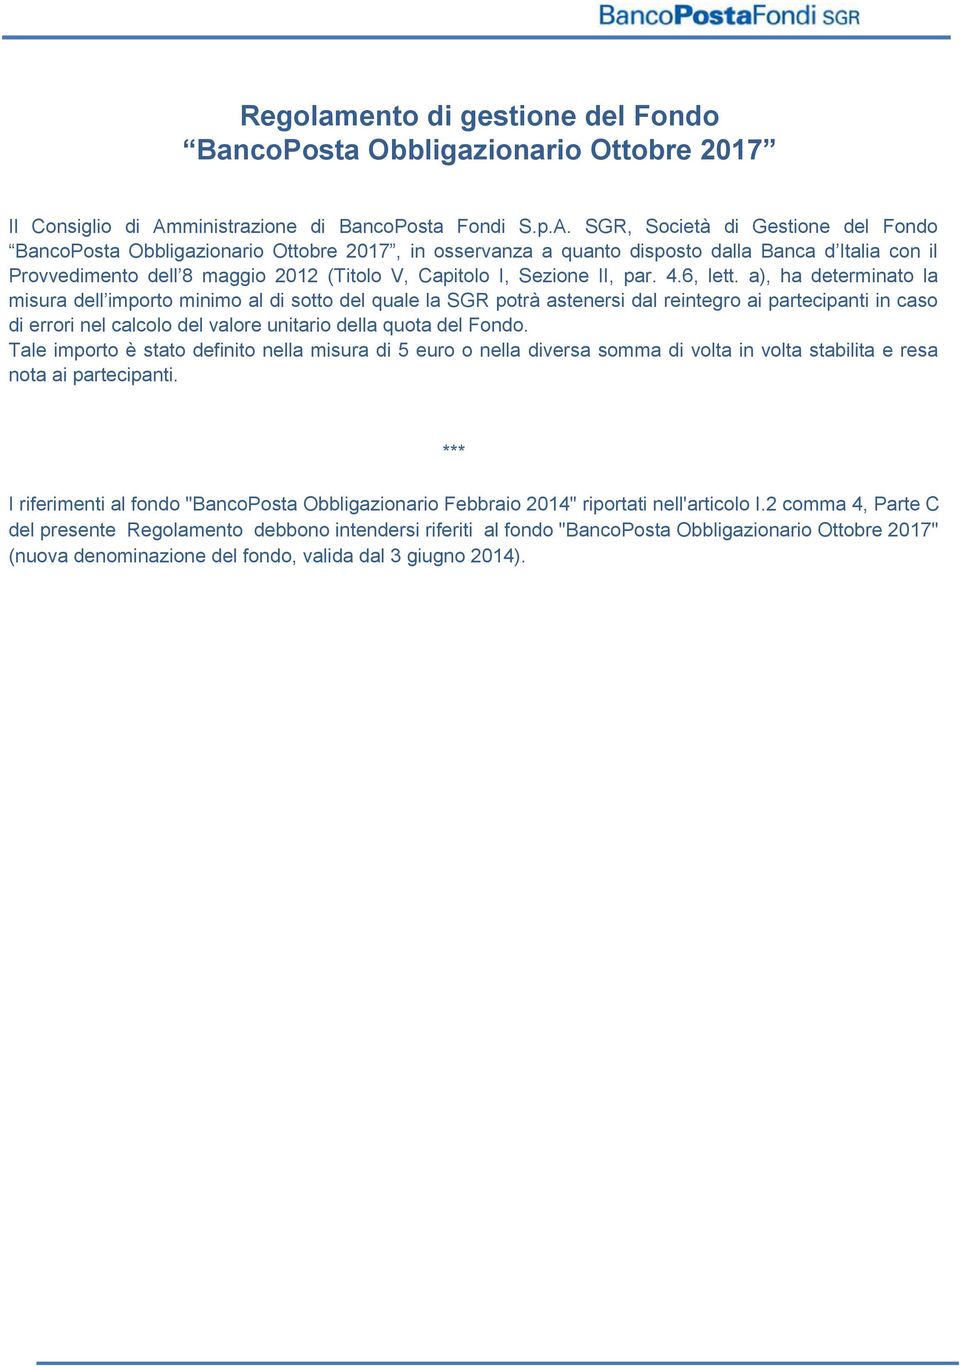 SGR, Società di Gestione del Fondo BancoPosta Obbligazionario Ottobre 2017, in osservanza a quanto disposto dalla Banca d Italia con il Provvedimento dell 8 maggio 2012 (Titolo V, Capitolo I, Sezione